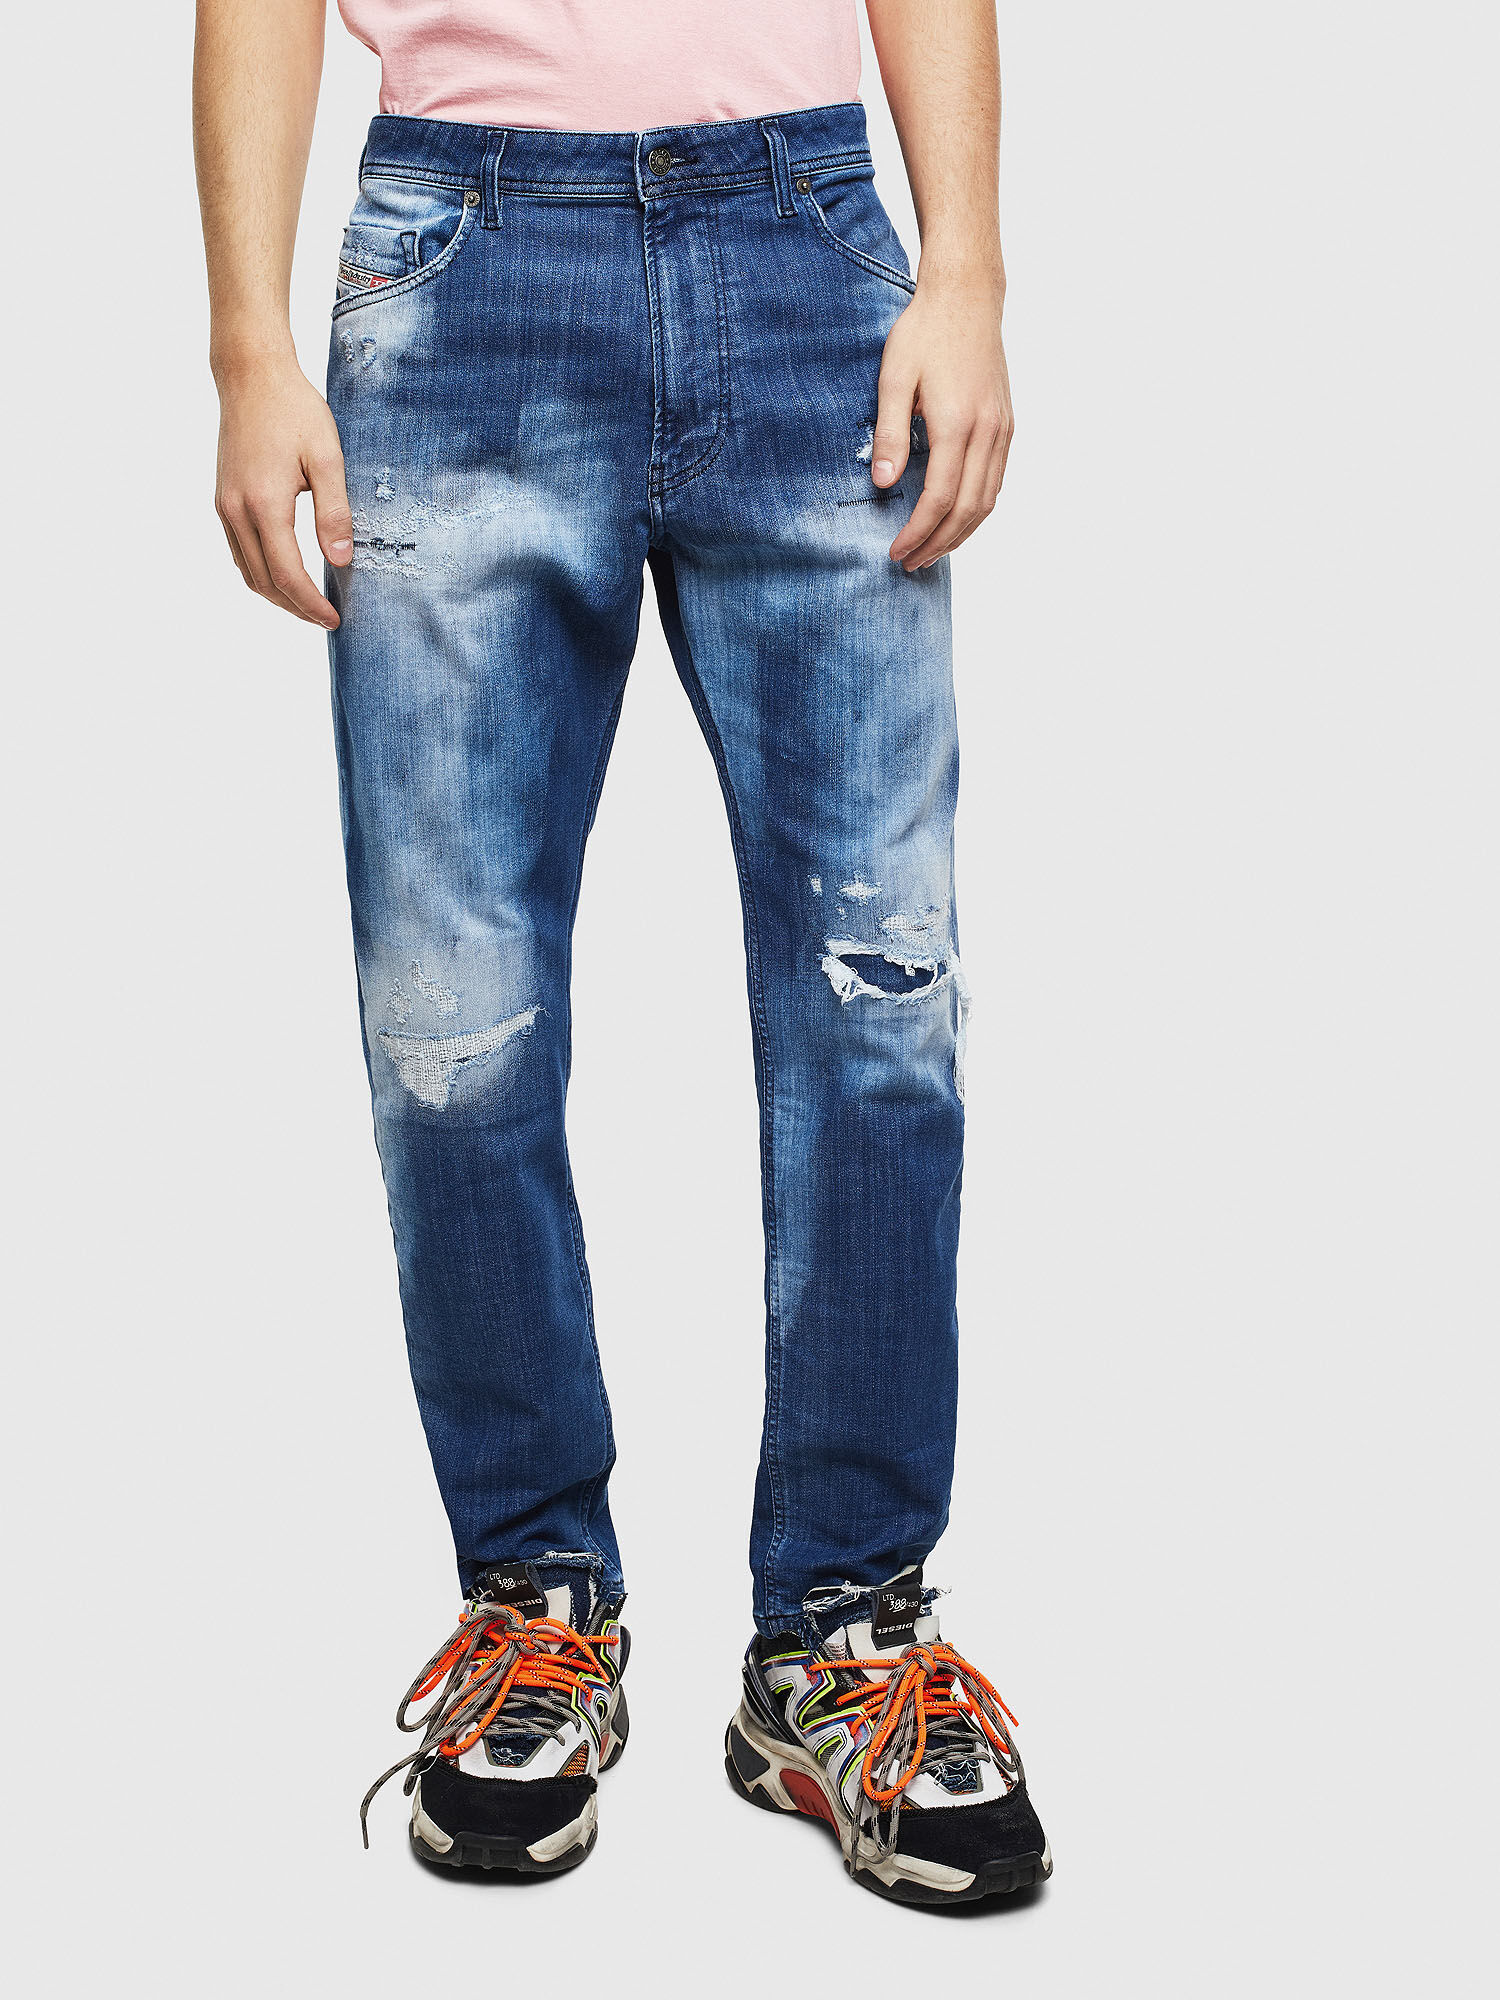 Narrot JoggJeans 0099S Man: Carrot Dark blue Jeans | Diesel